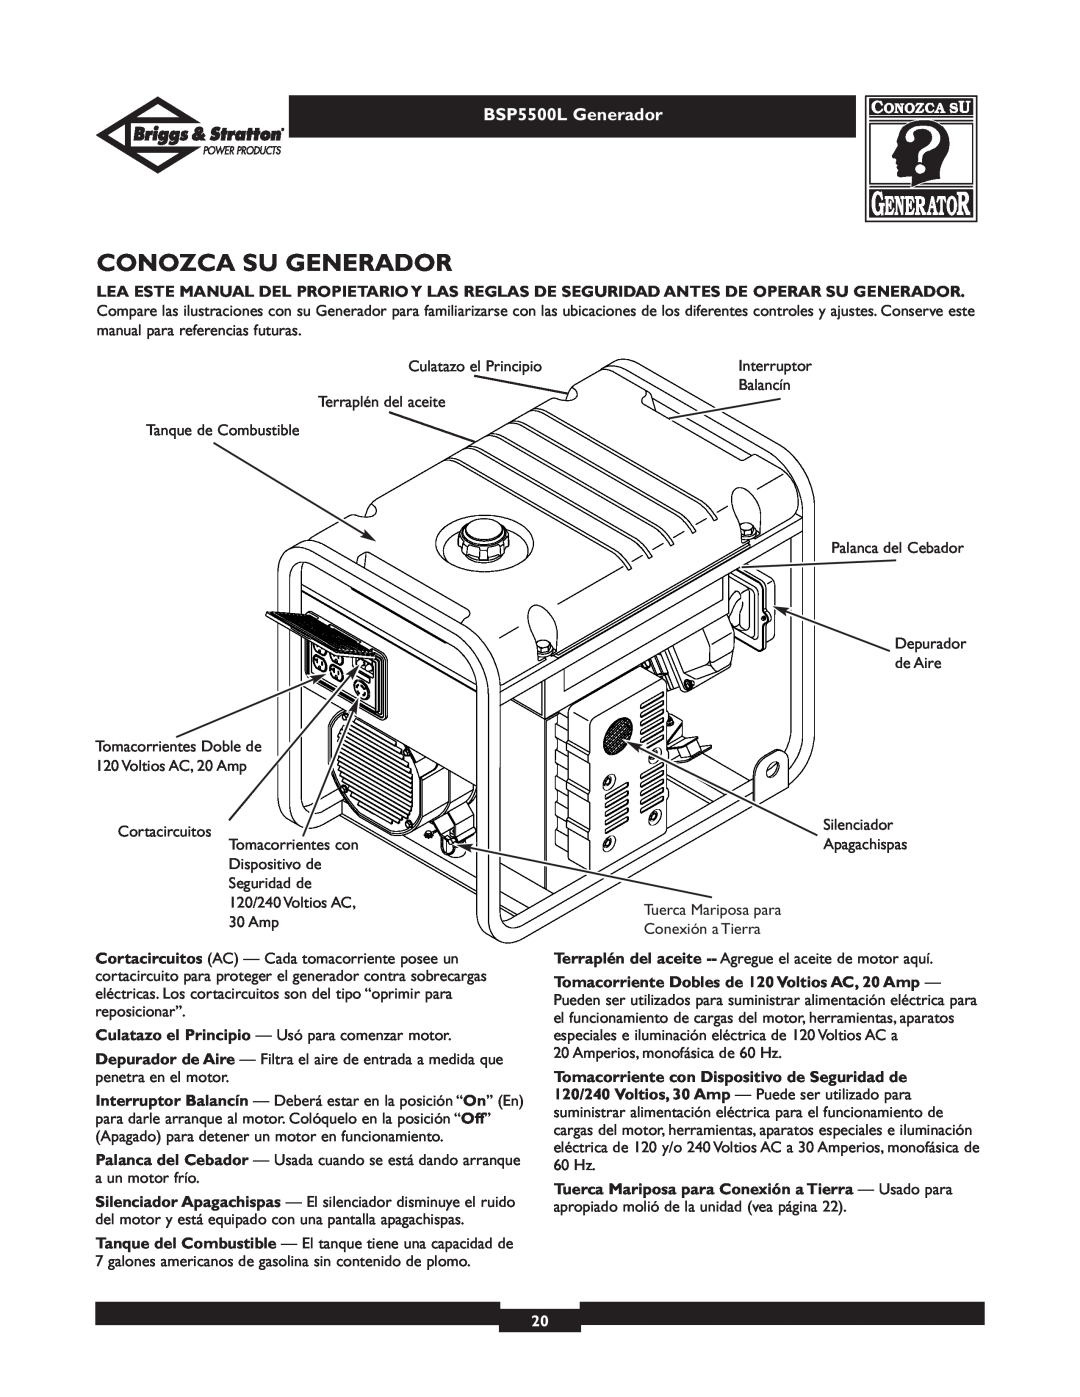 Briggs & Stratton bsp5500l owner manual Conozca Su Generador, BSP5500L Generador 